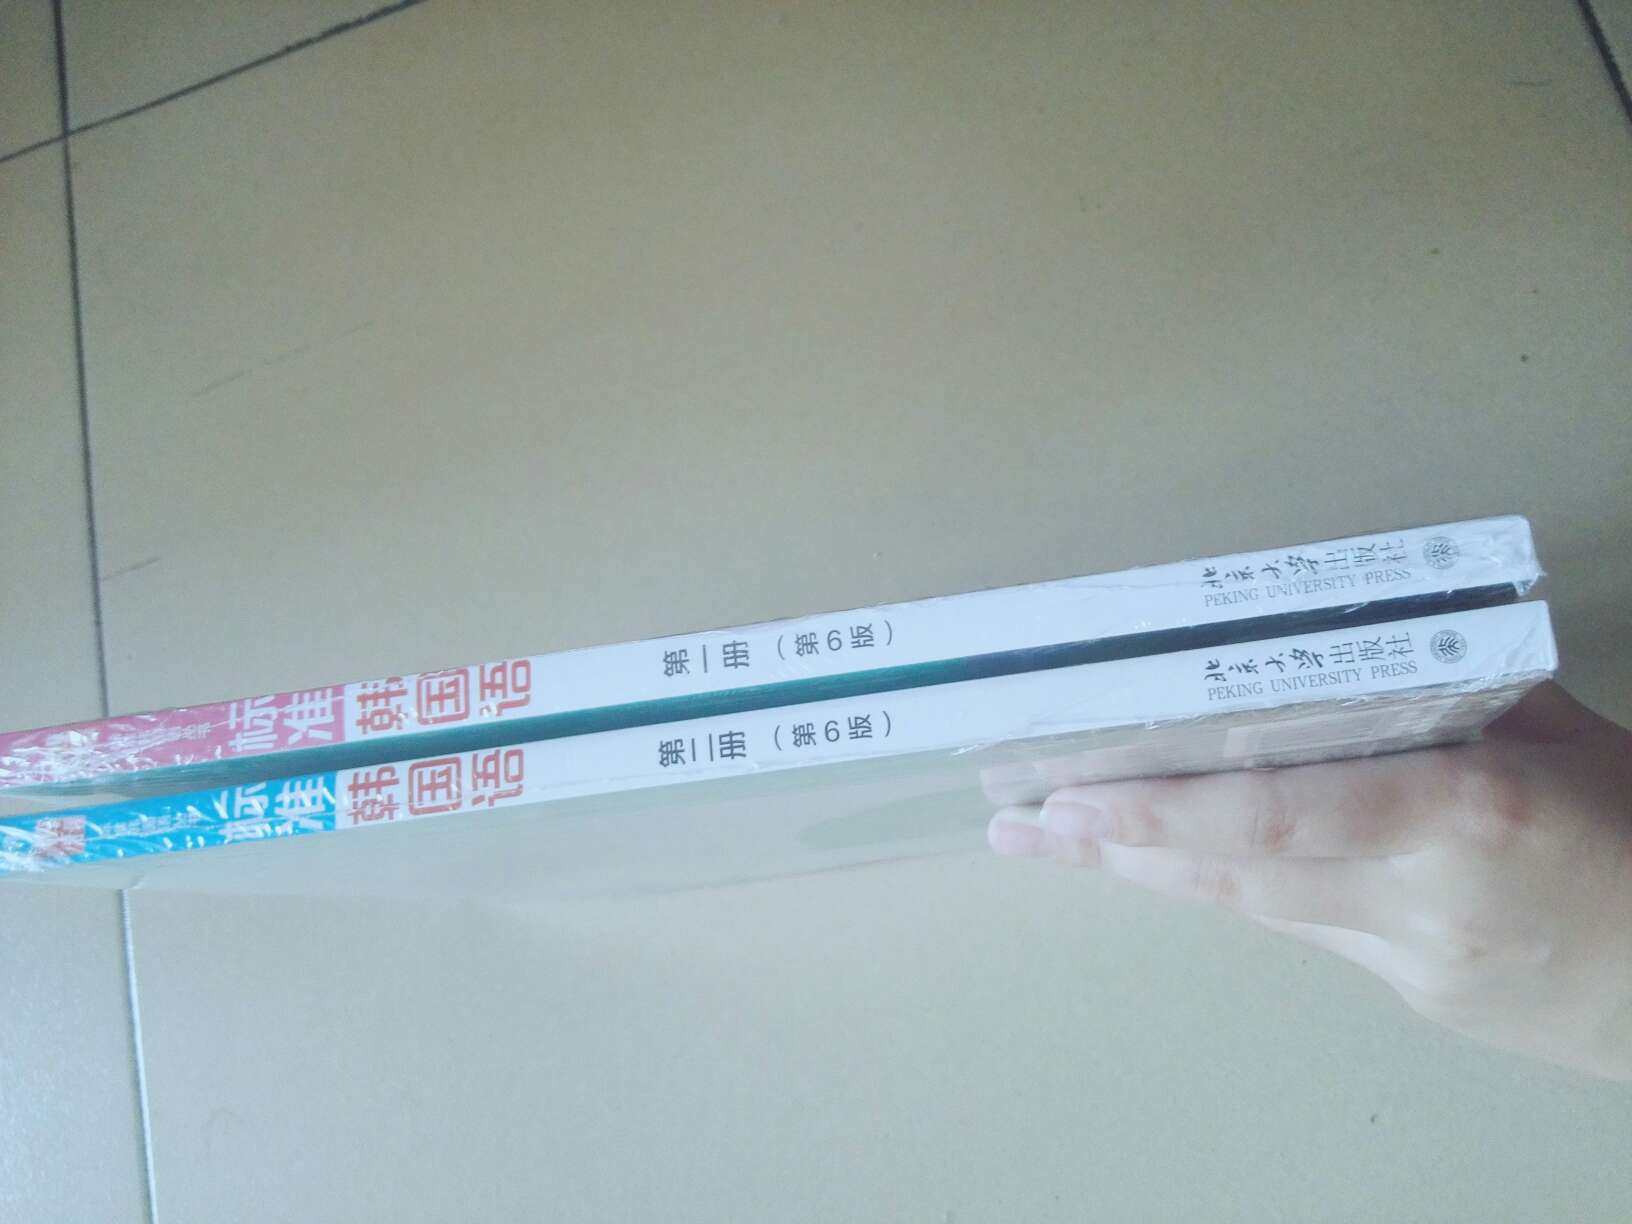 包装完好，没有破损折角，书里配有光碟，适合用来自学韩语。?